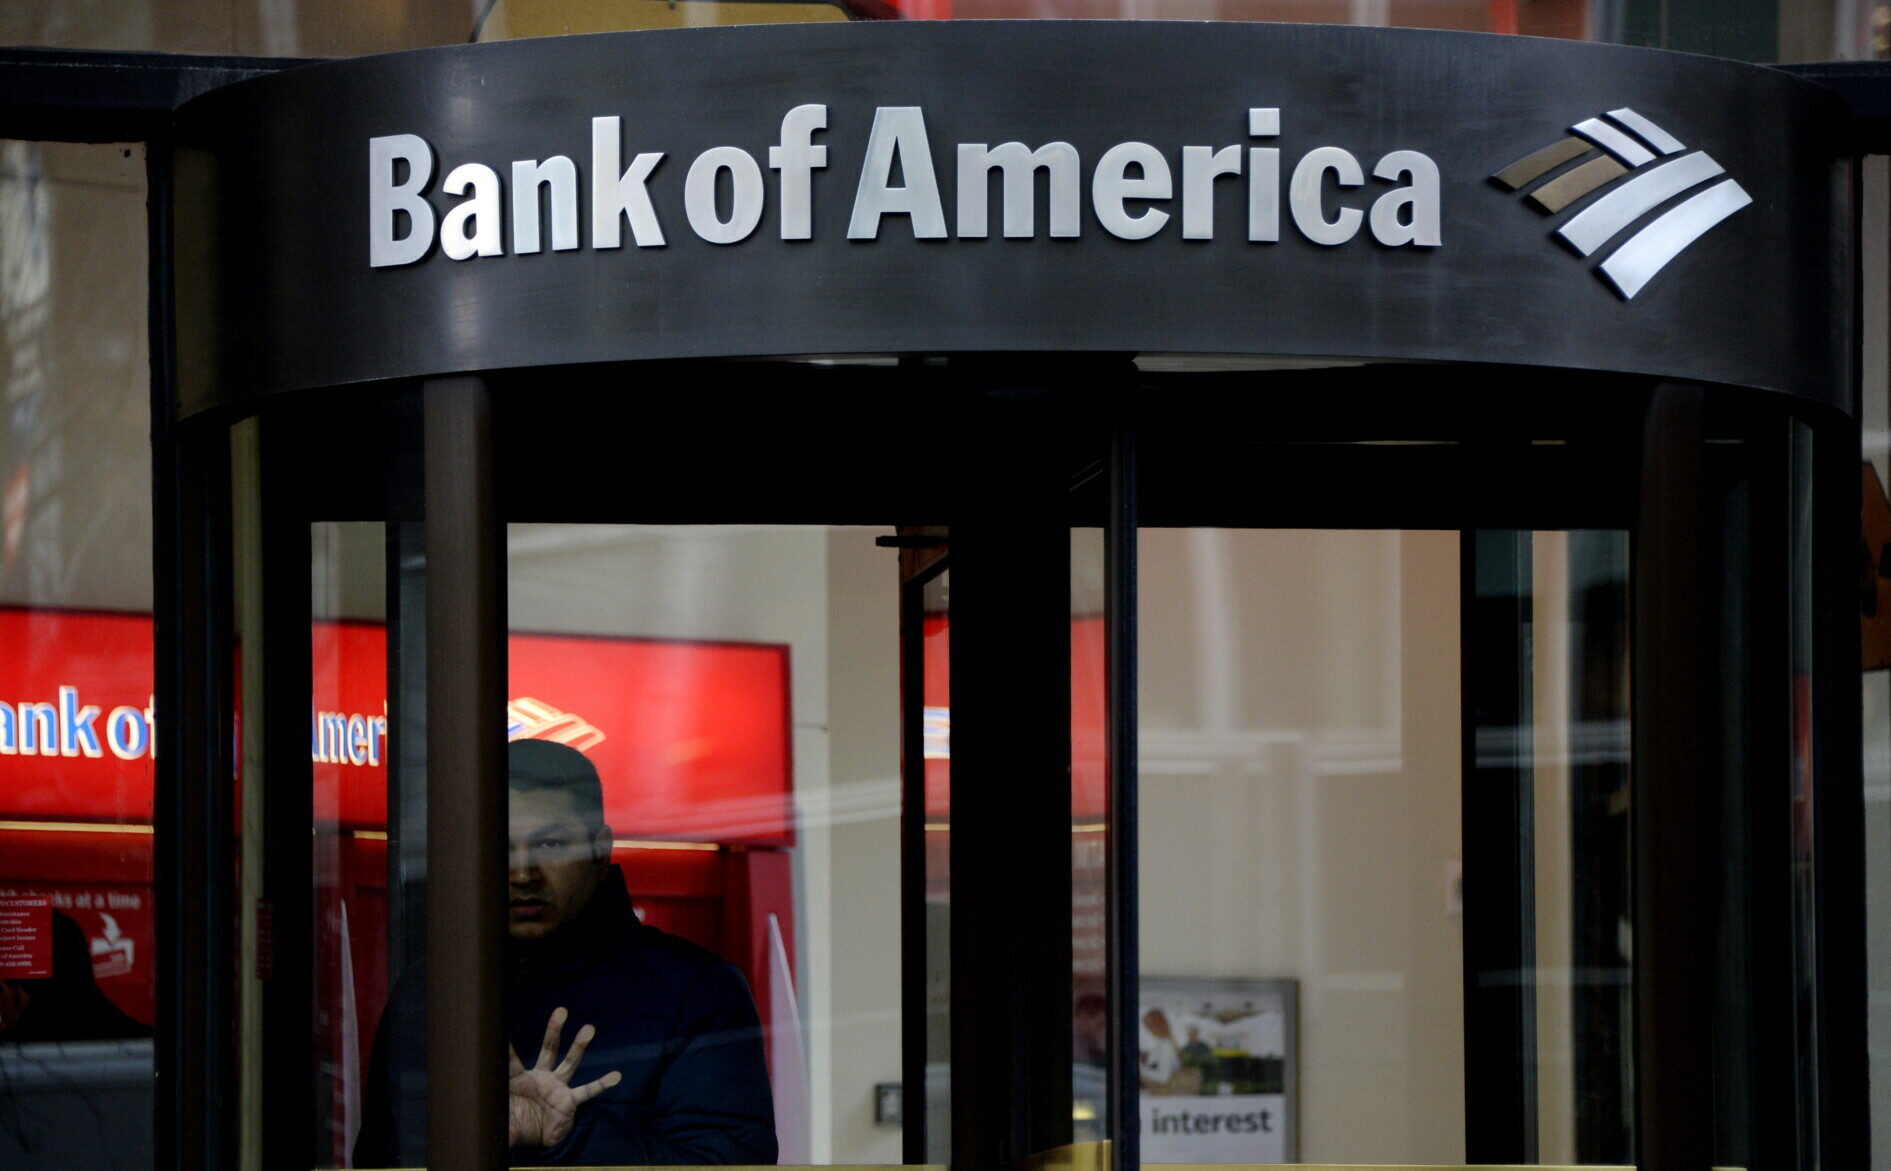 Bank of America © EPA/JUSTIN LANE